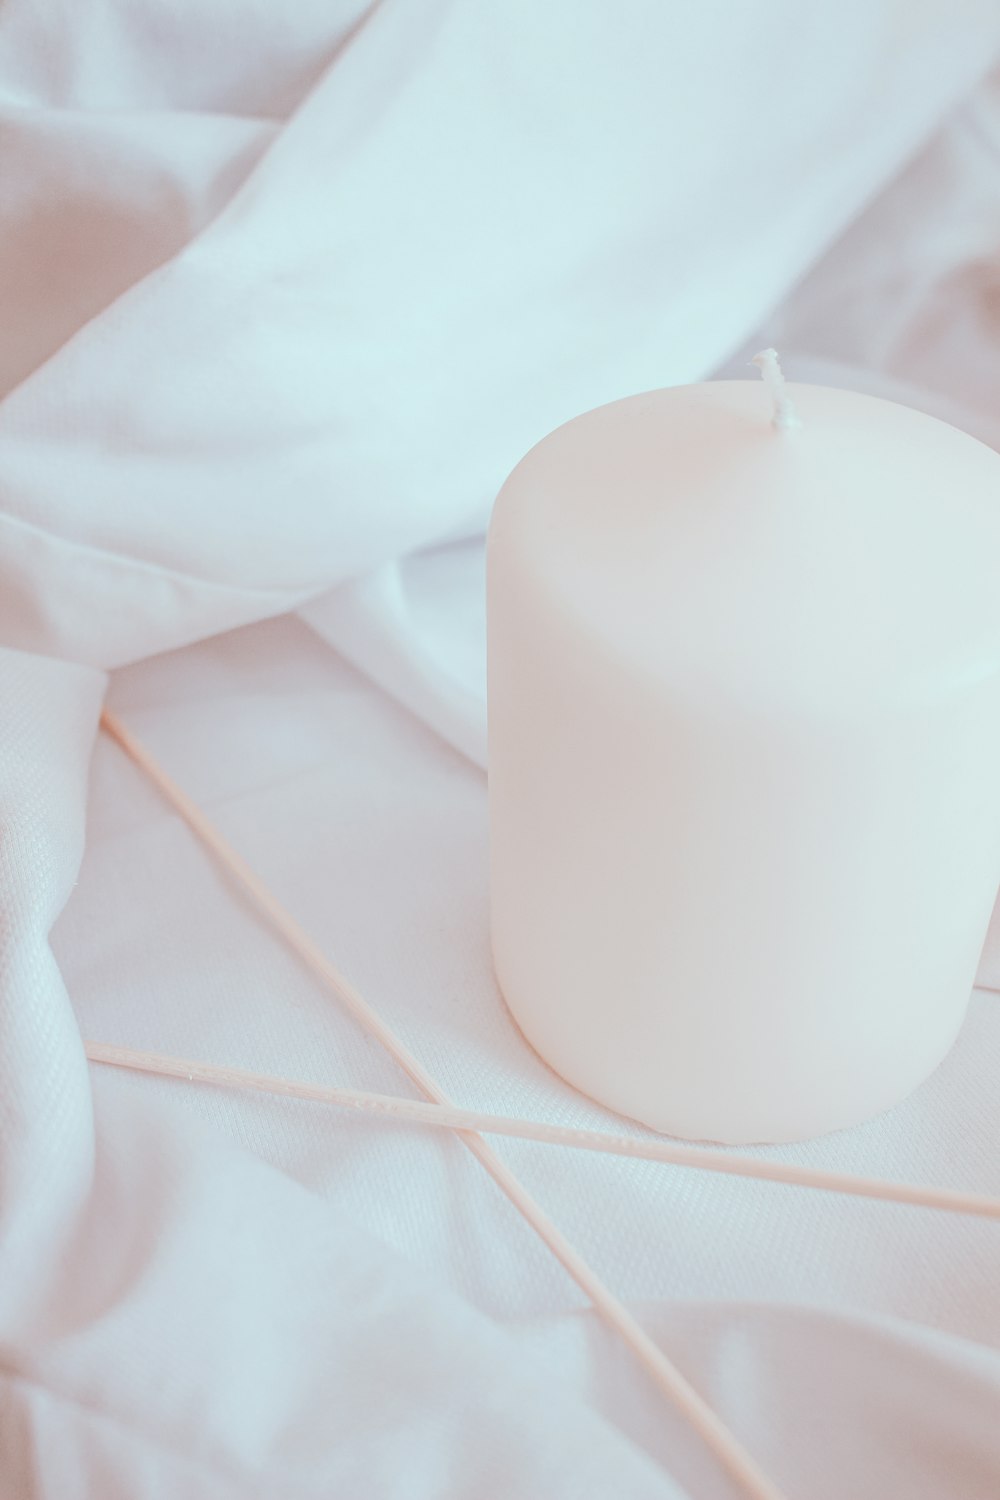 white pillar candle on white textile